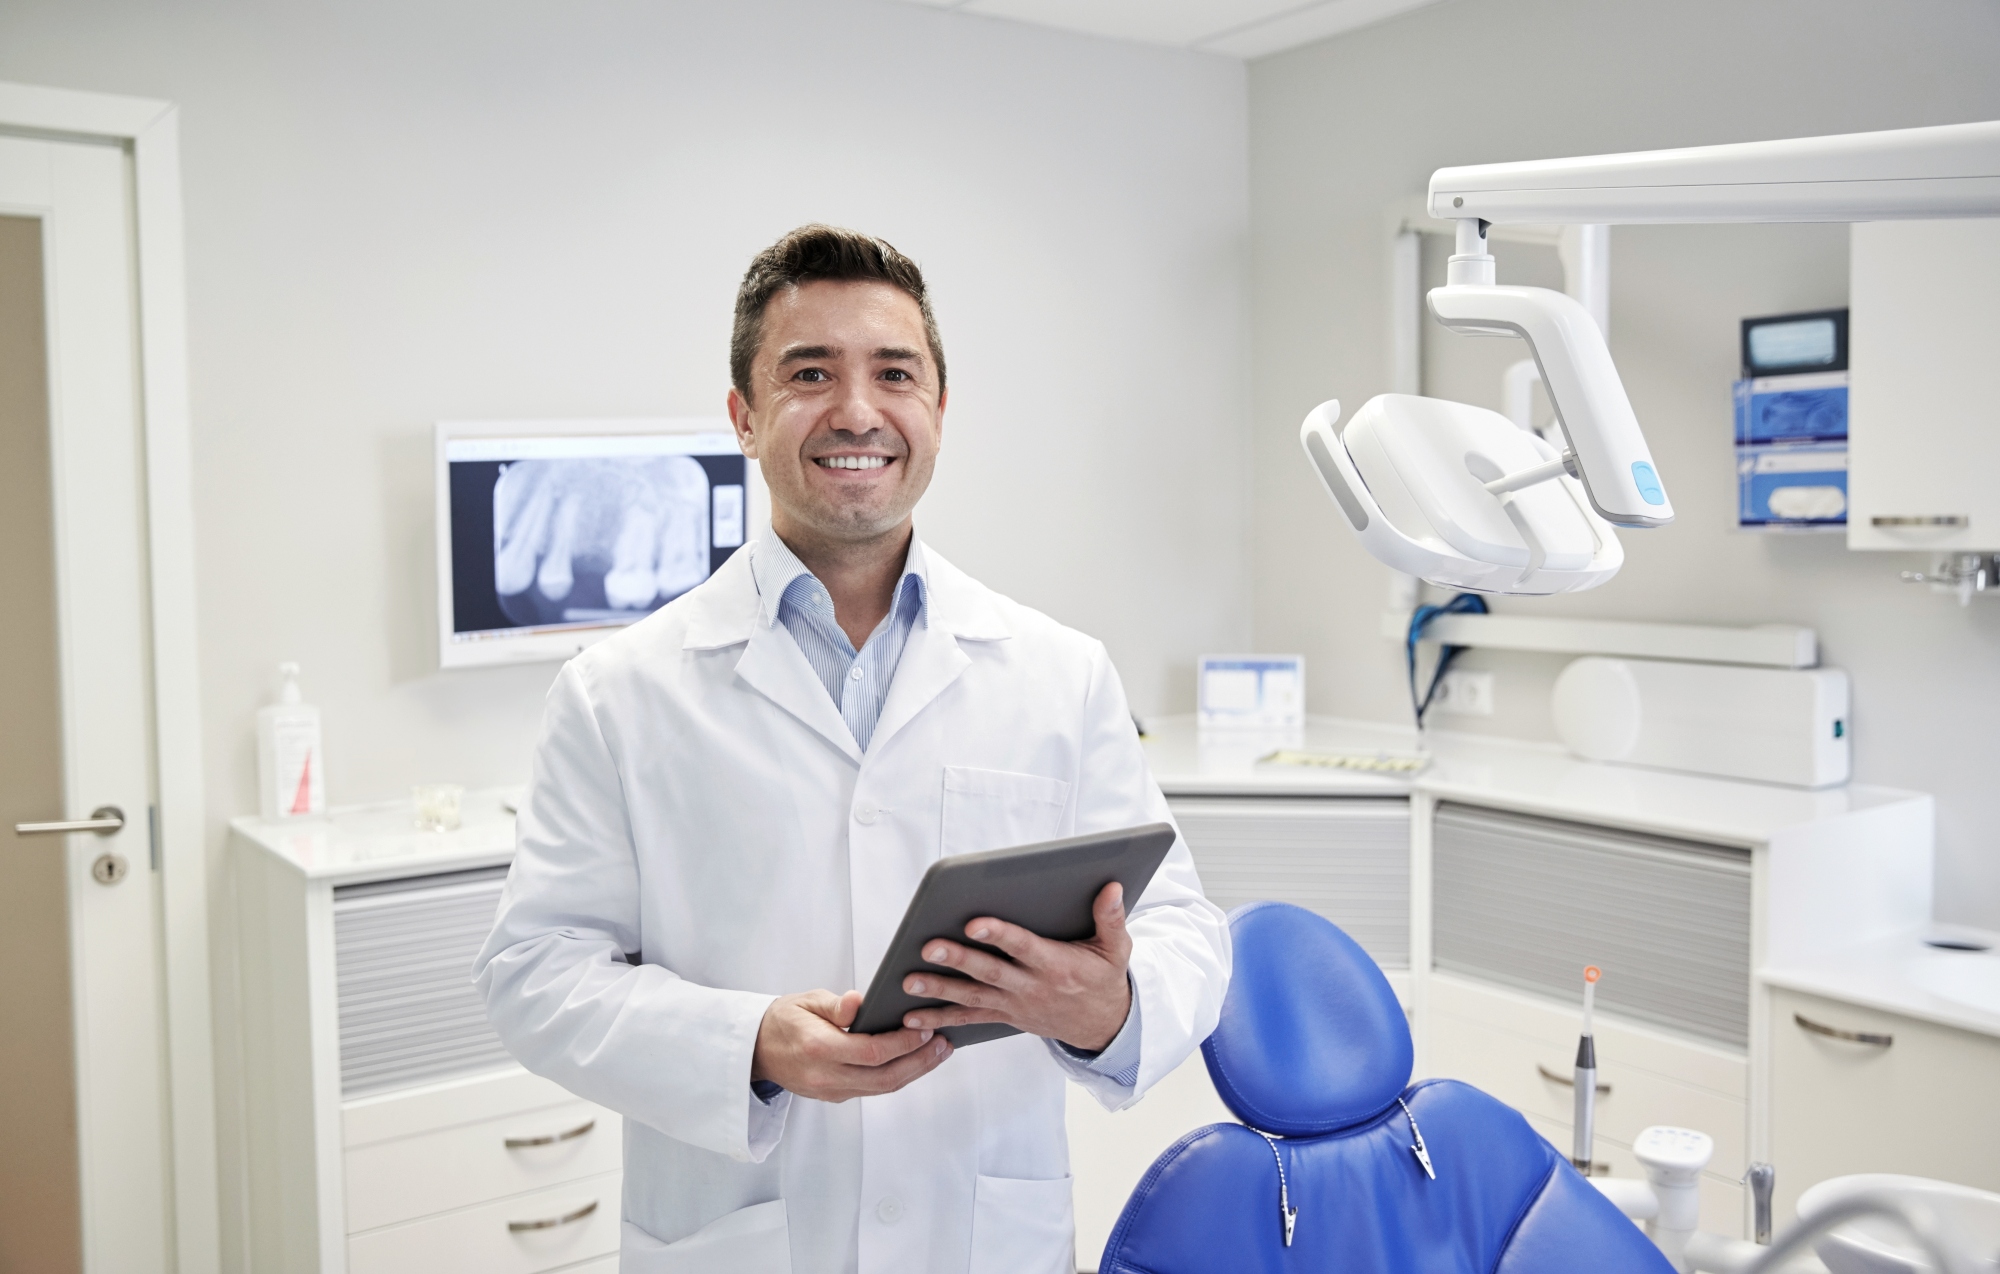 Corporate dentistry vs private practice